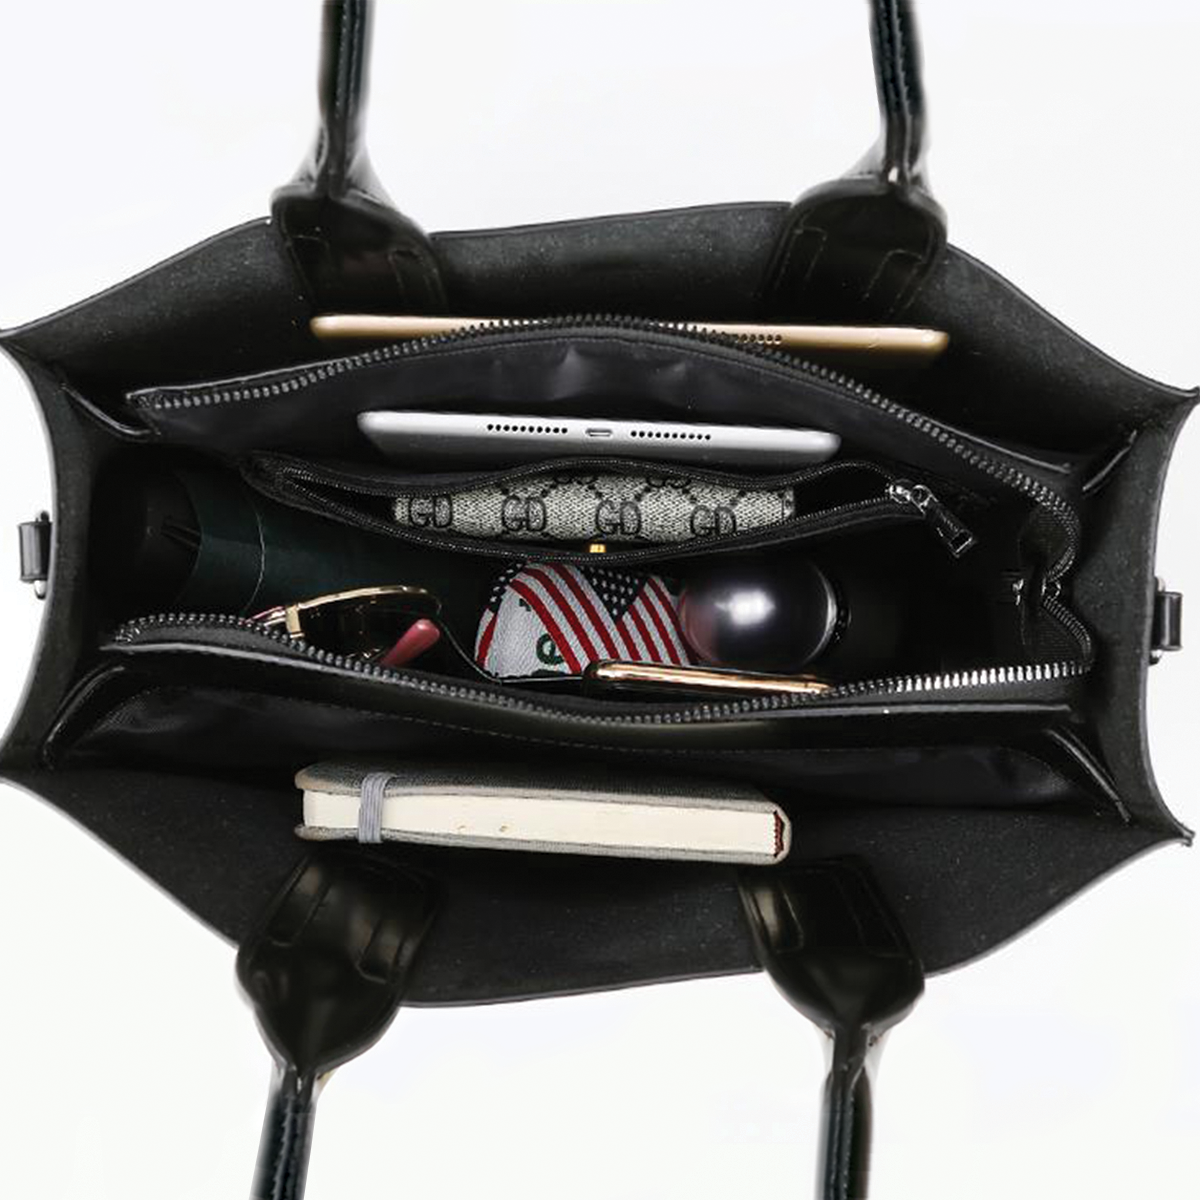 Dachshund Luxury Handbag V2